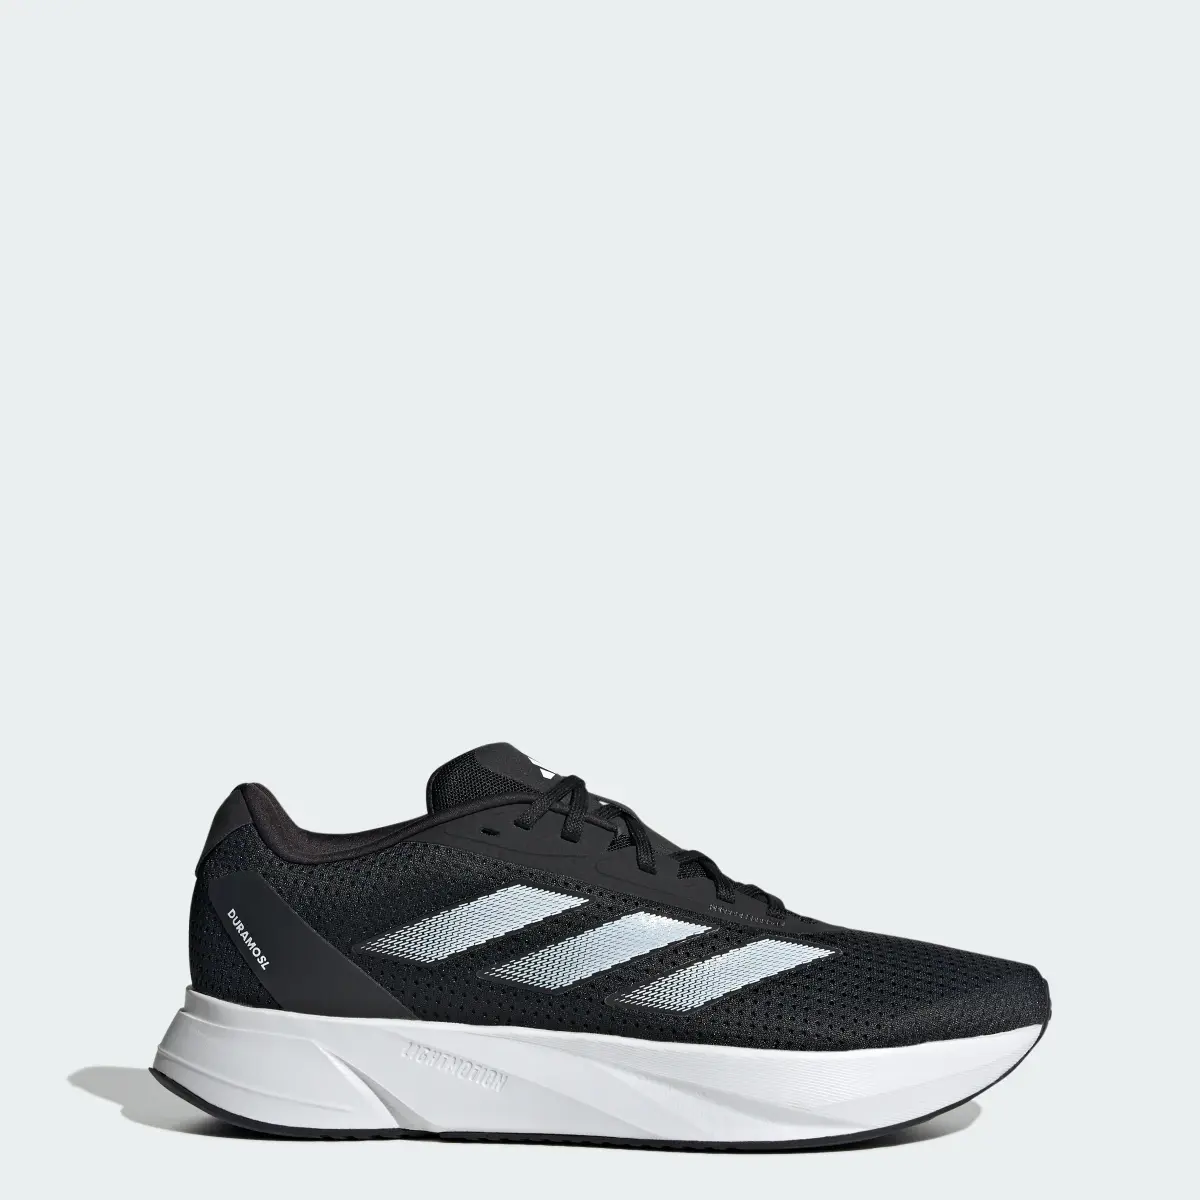 Adidas Duramo SL Running Shoes. 1